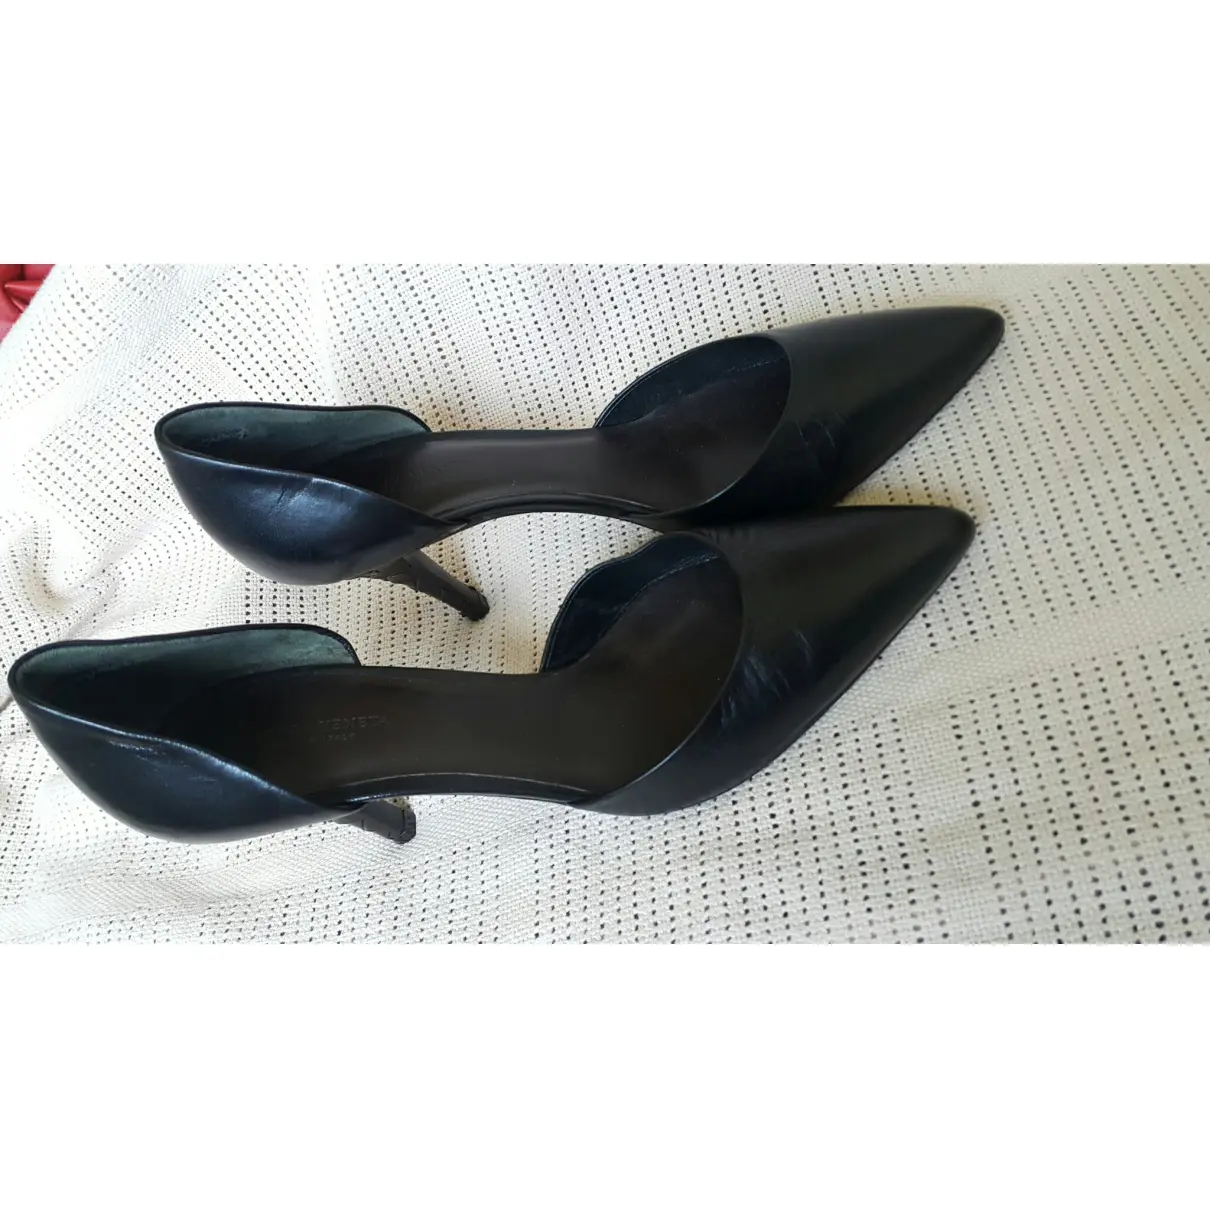 Leather heels Bottega Veneta - Vintage